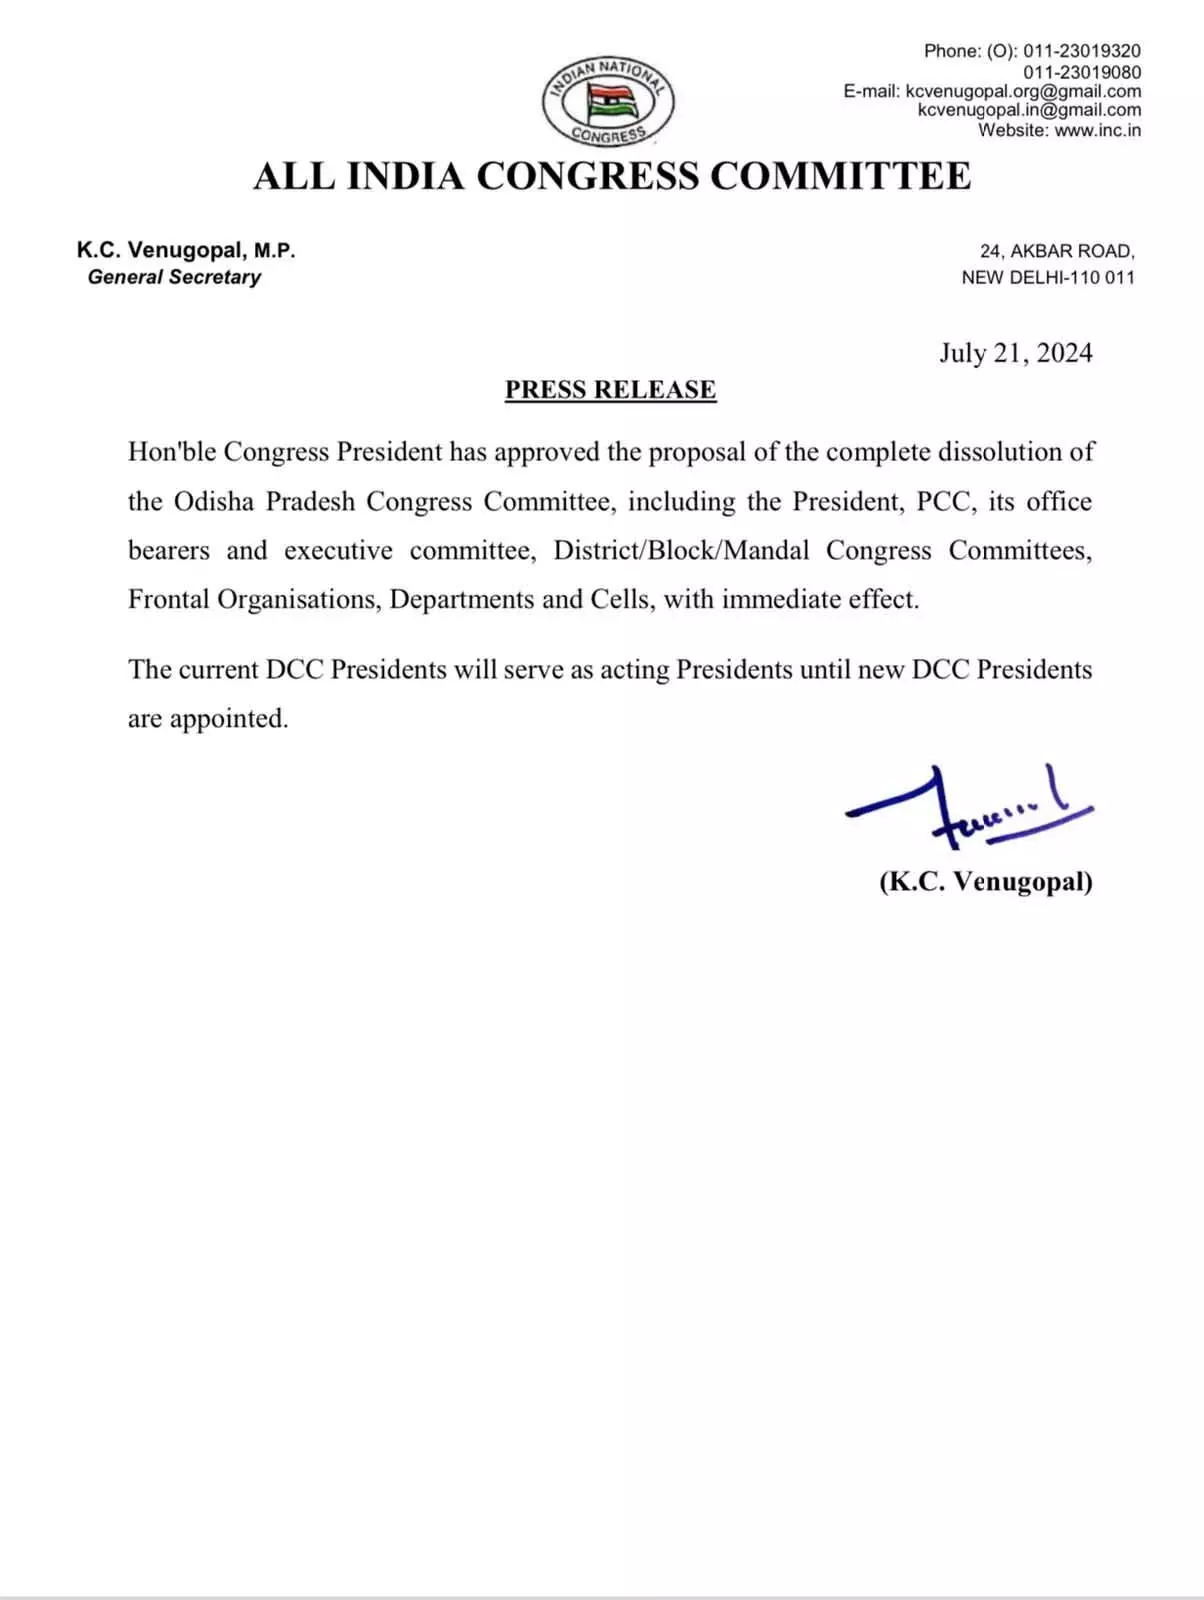 Congress ने ओडिशा प्रदेश कांग्रेस कमेटी को भंग करने की मंजूरी दी